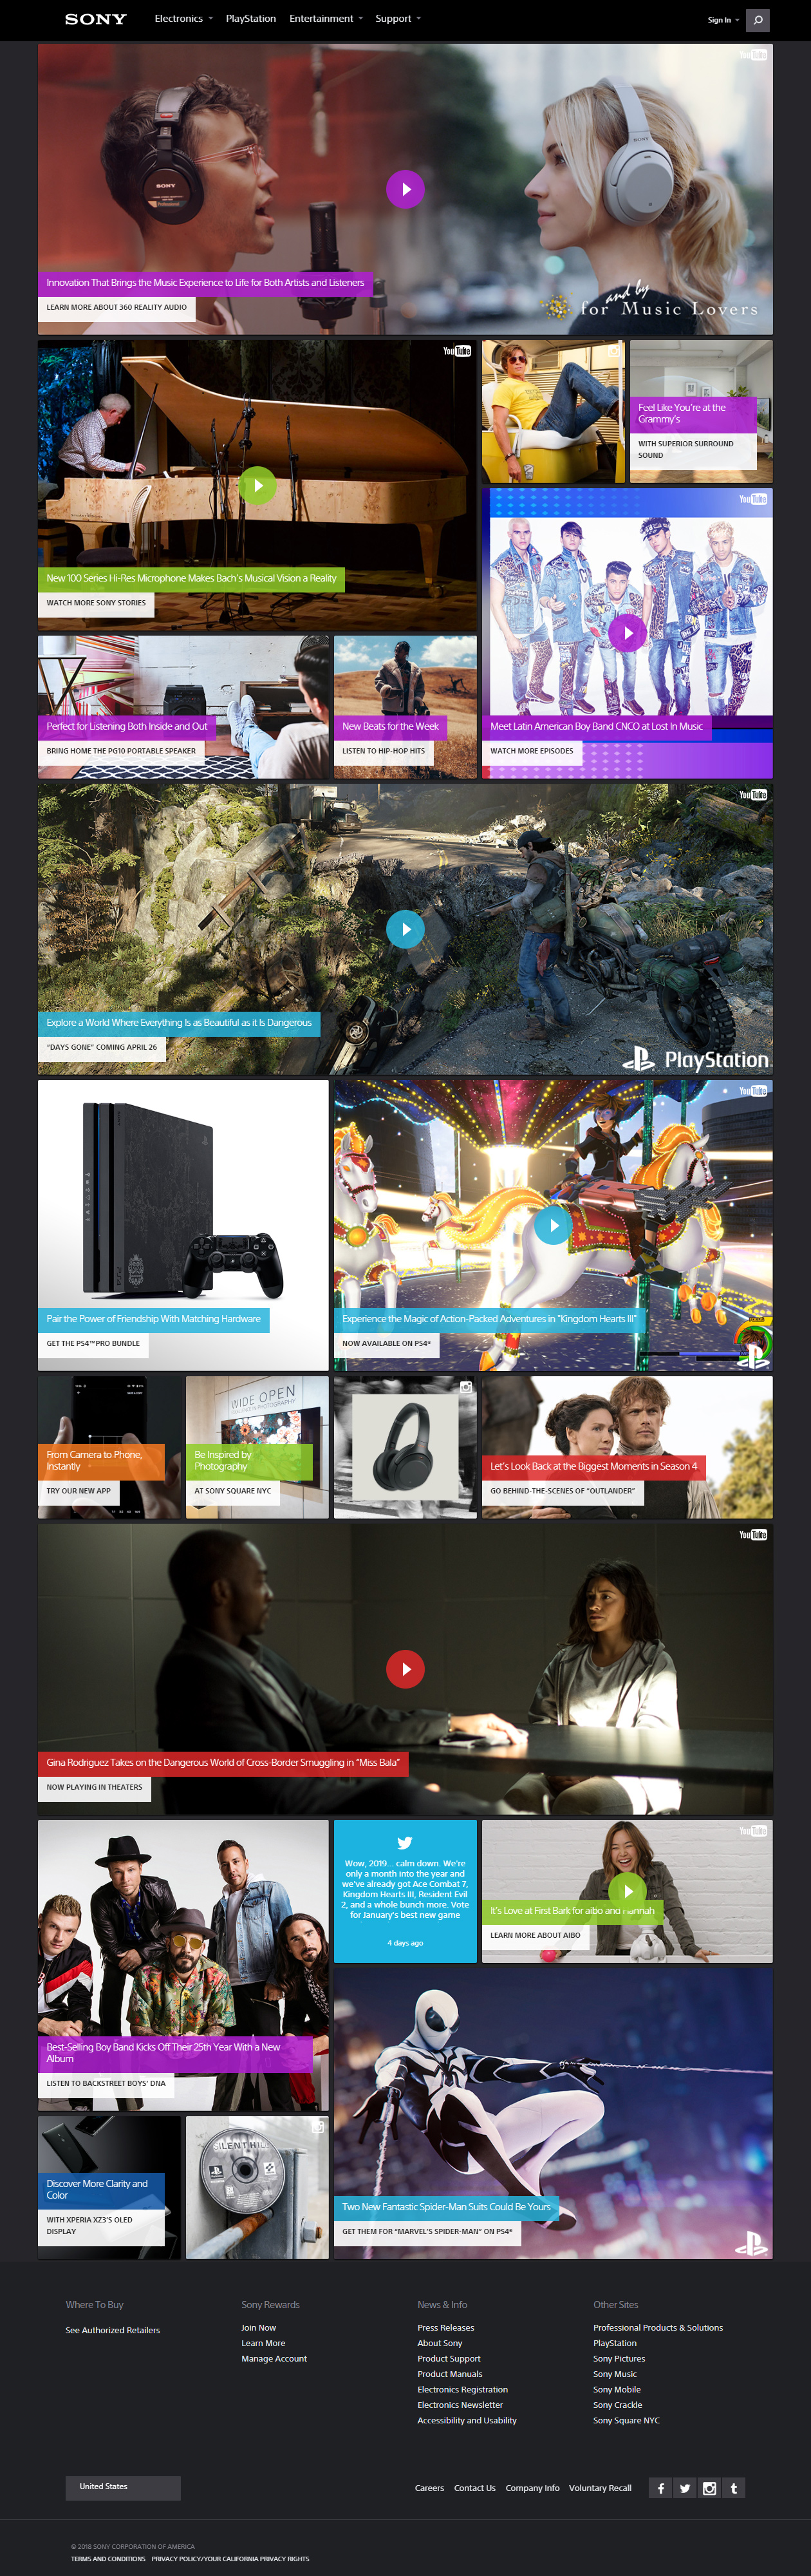 Sony website in 2019